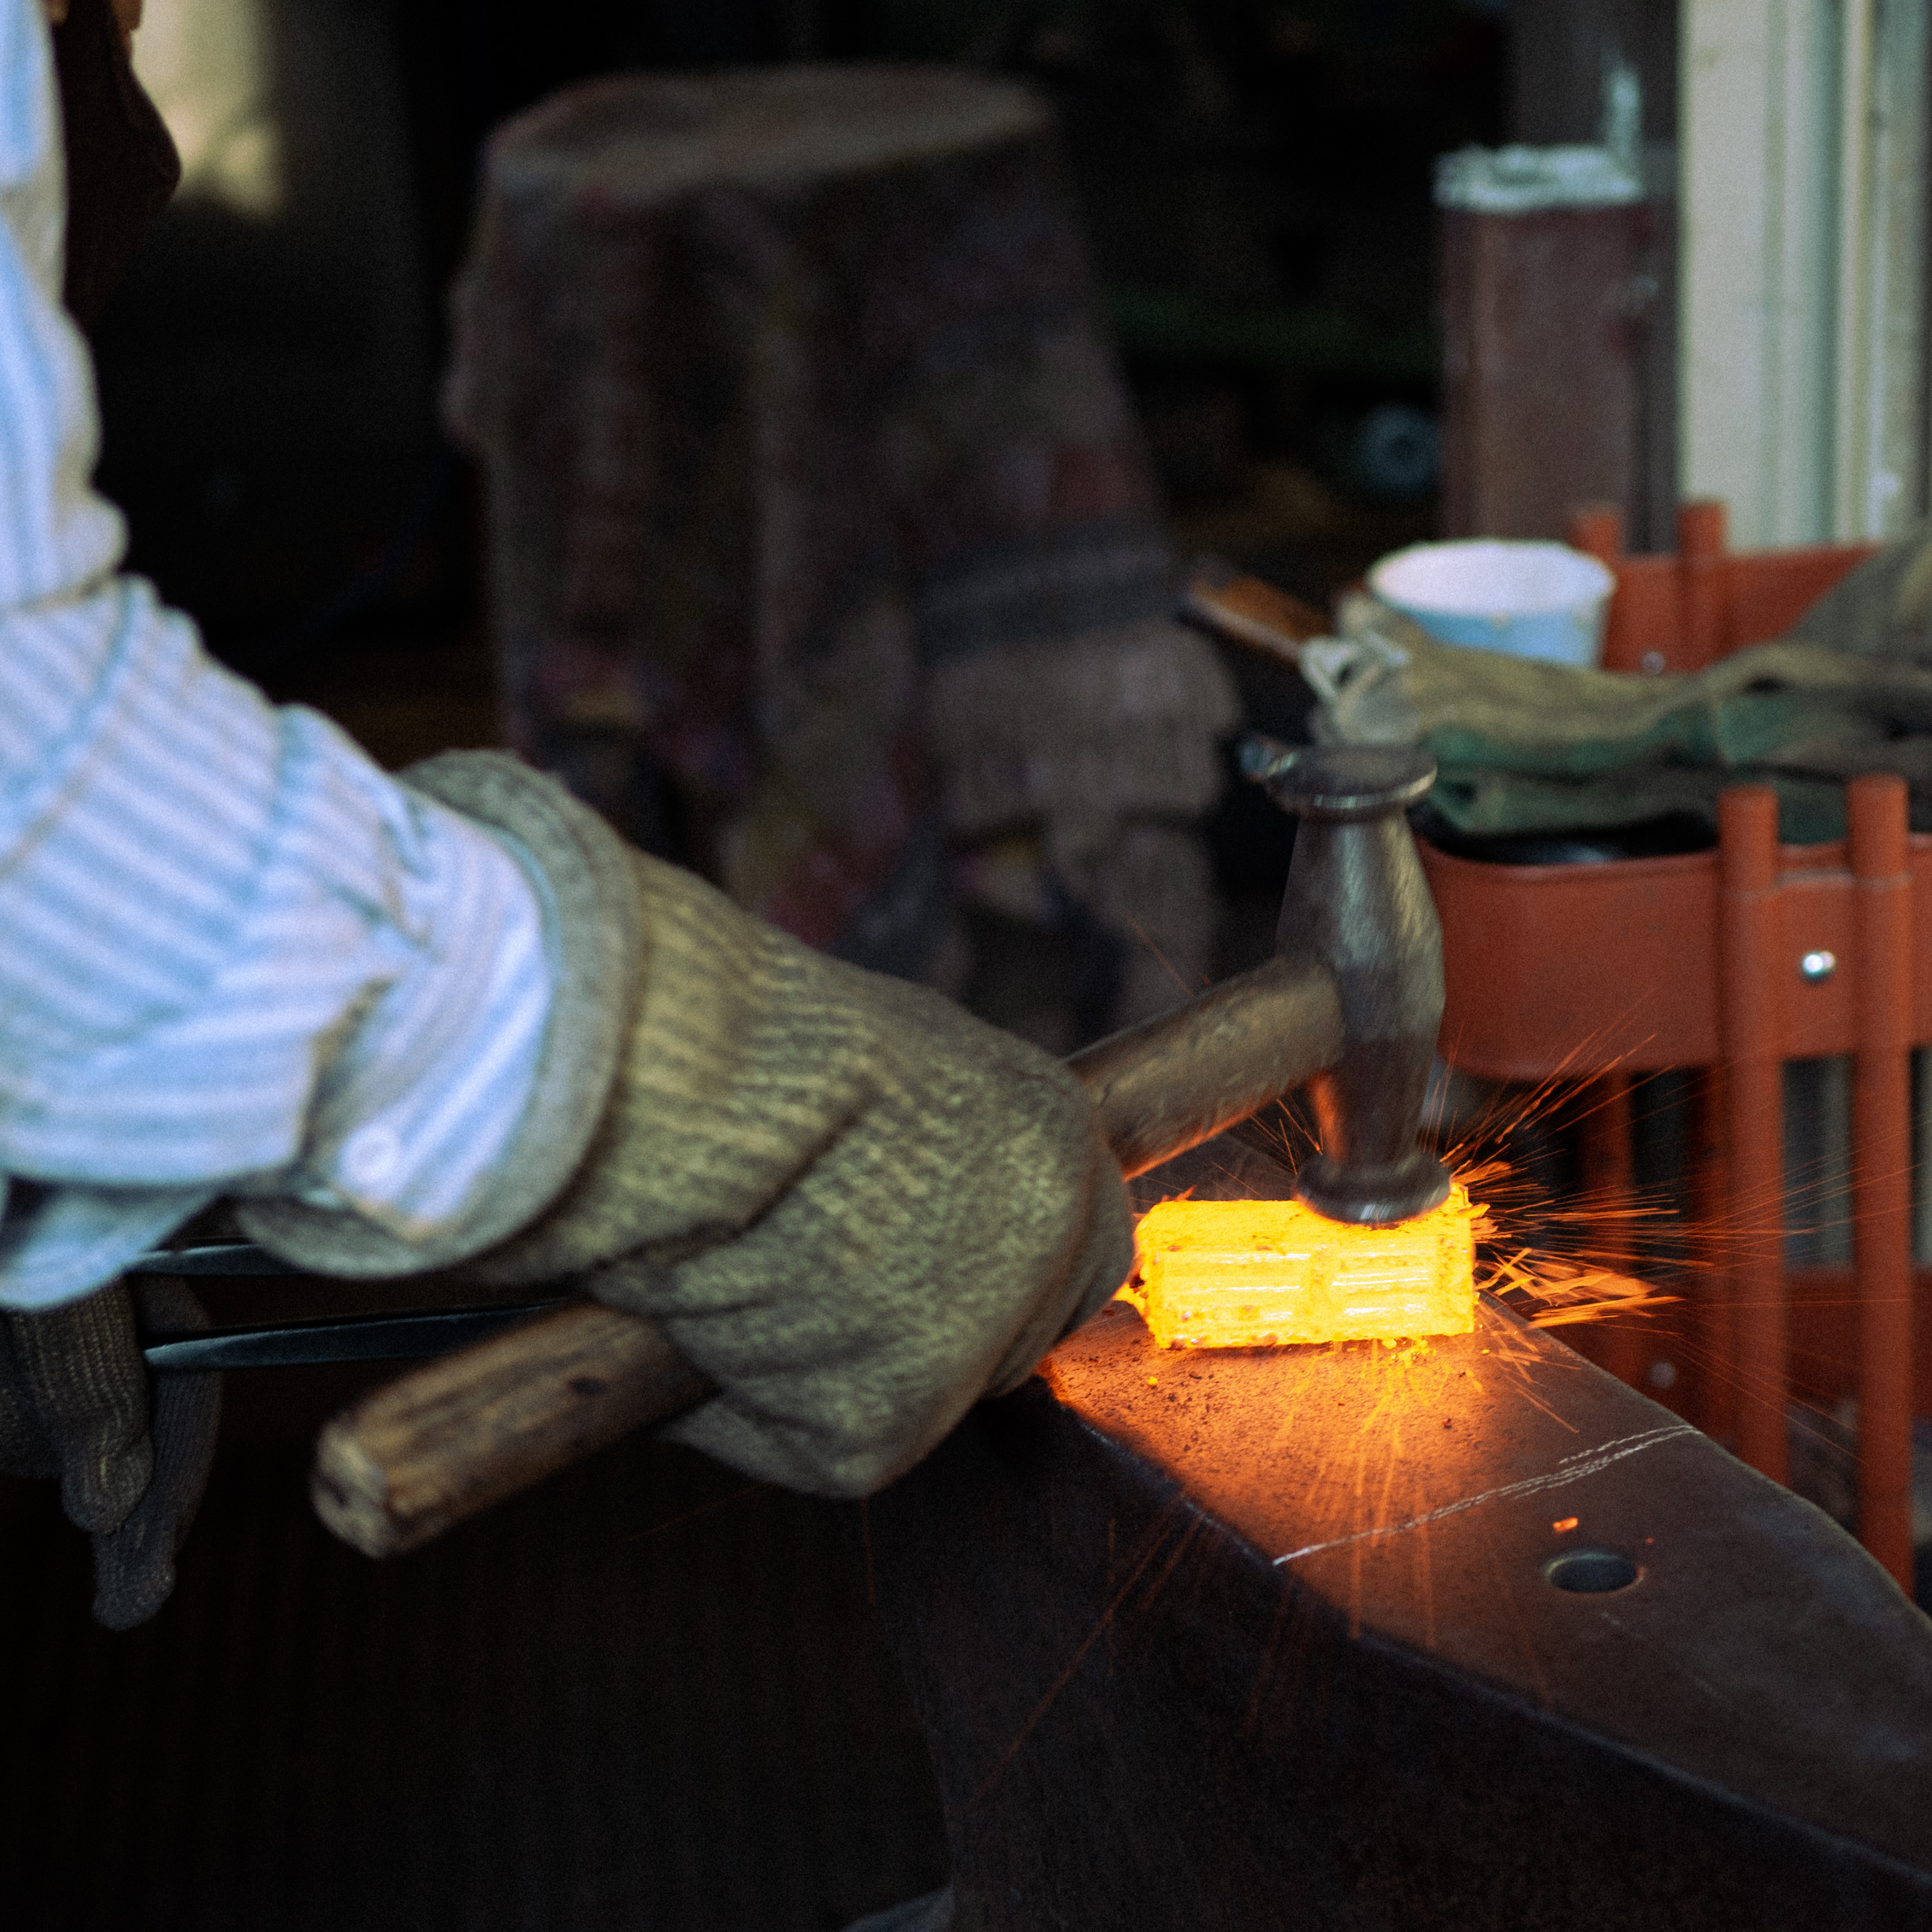 Ein Stück Stahl wird vom Schmied beschlagen. Der Stahl leuchtet heiß orange. Funken sprühen als der Hammer auf den Stahl trifft.